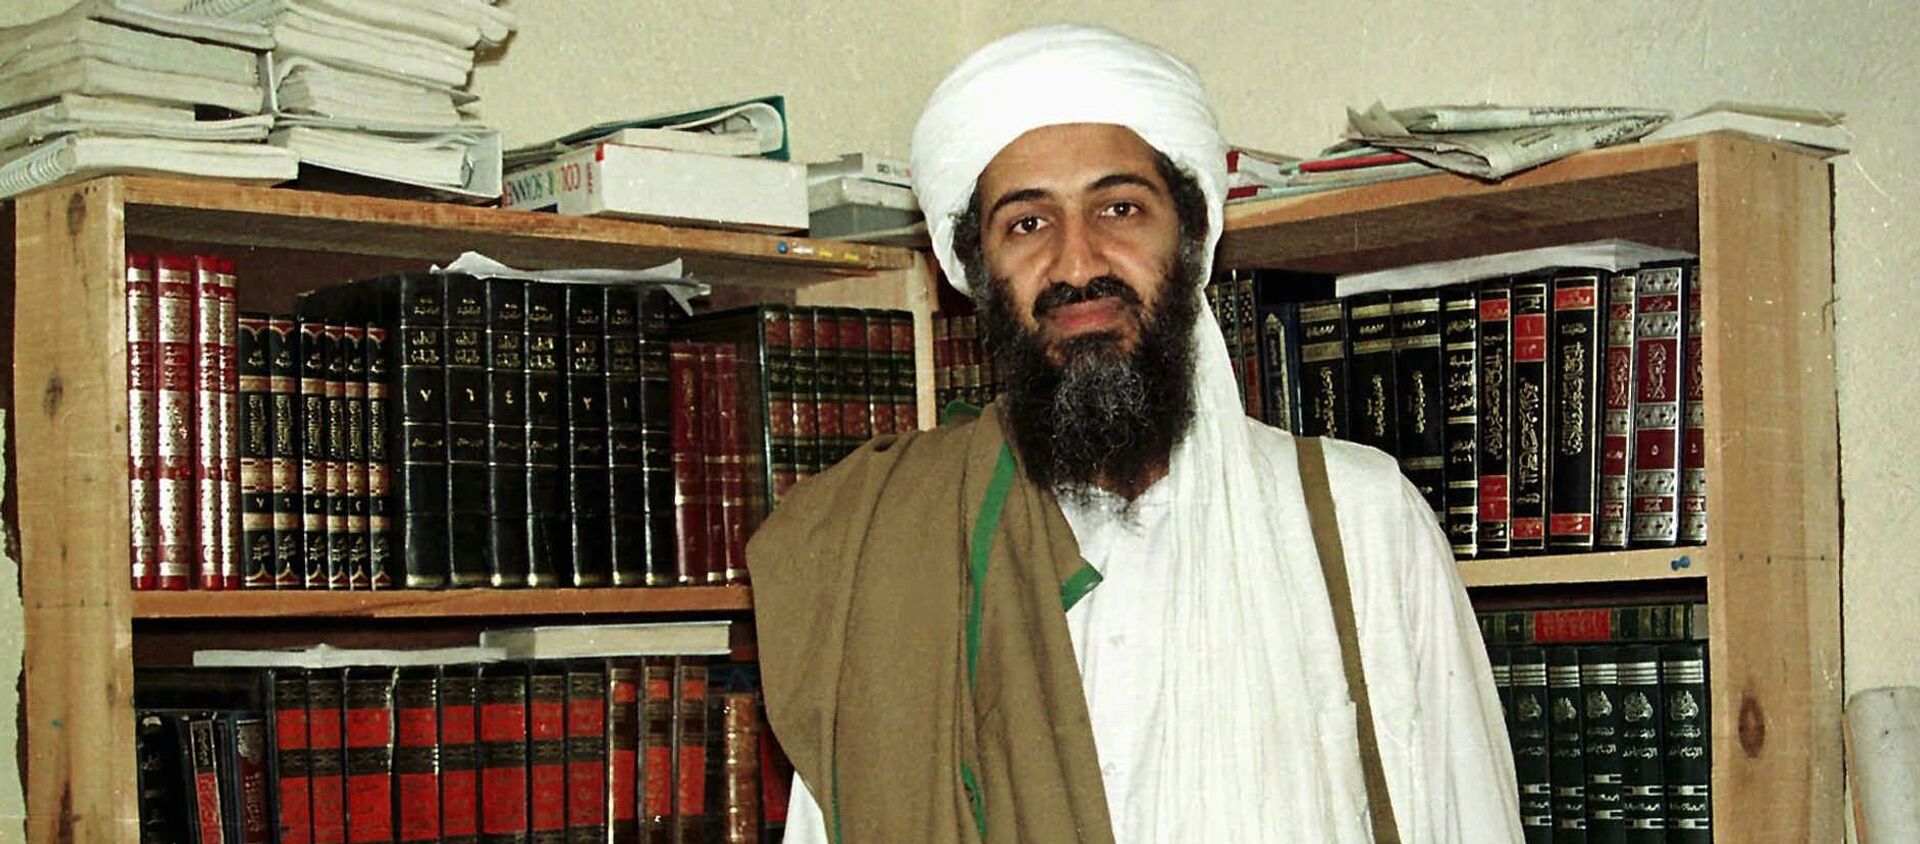 Al Qaida leader Osama bin Laden is seen in Afghanistan. (File) - Sputnik International, 1920, 07.08.2021